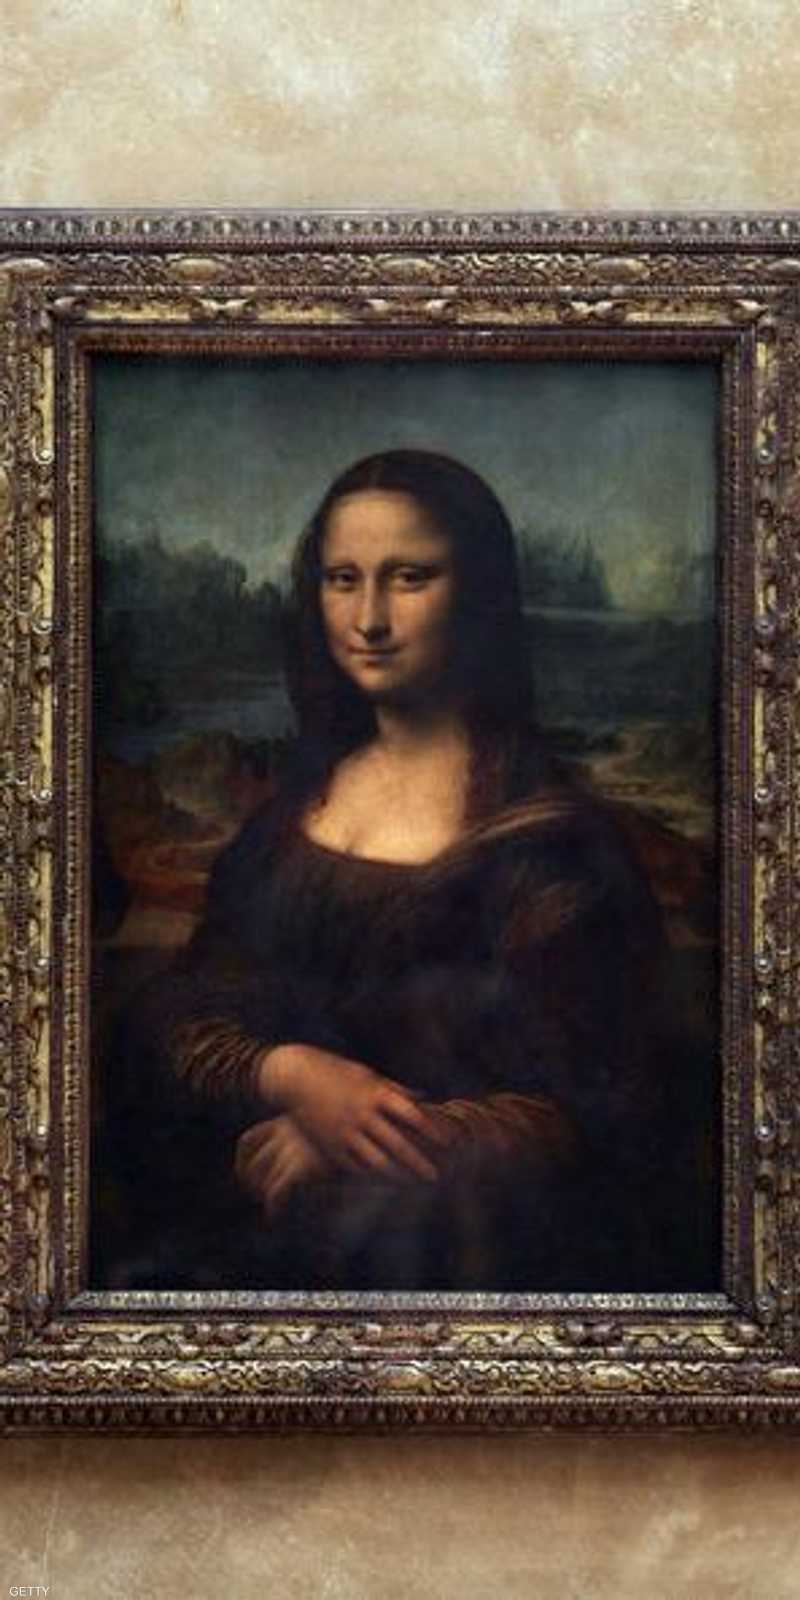 ليوناردو دافنشي يثير جدلا بين فرنسا وإيطاليا,الموناليزا,متحف اللوفر,إيطاليا,فرنسا 1-1223805.jpg